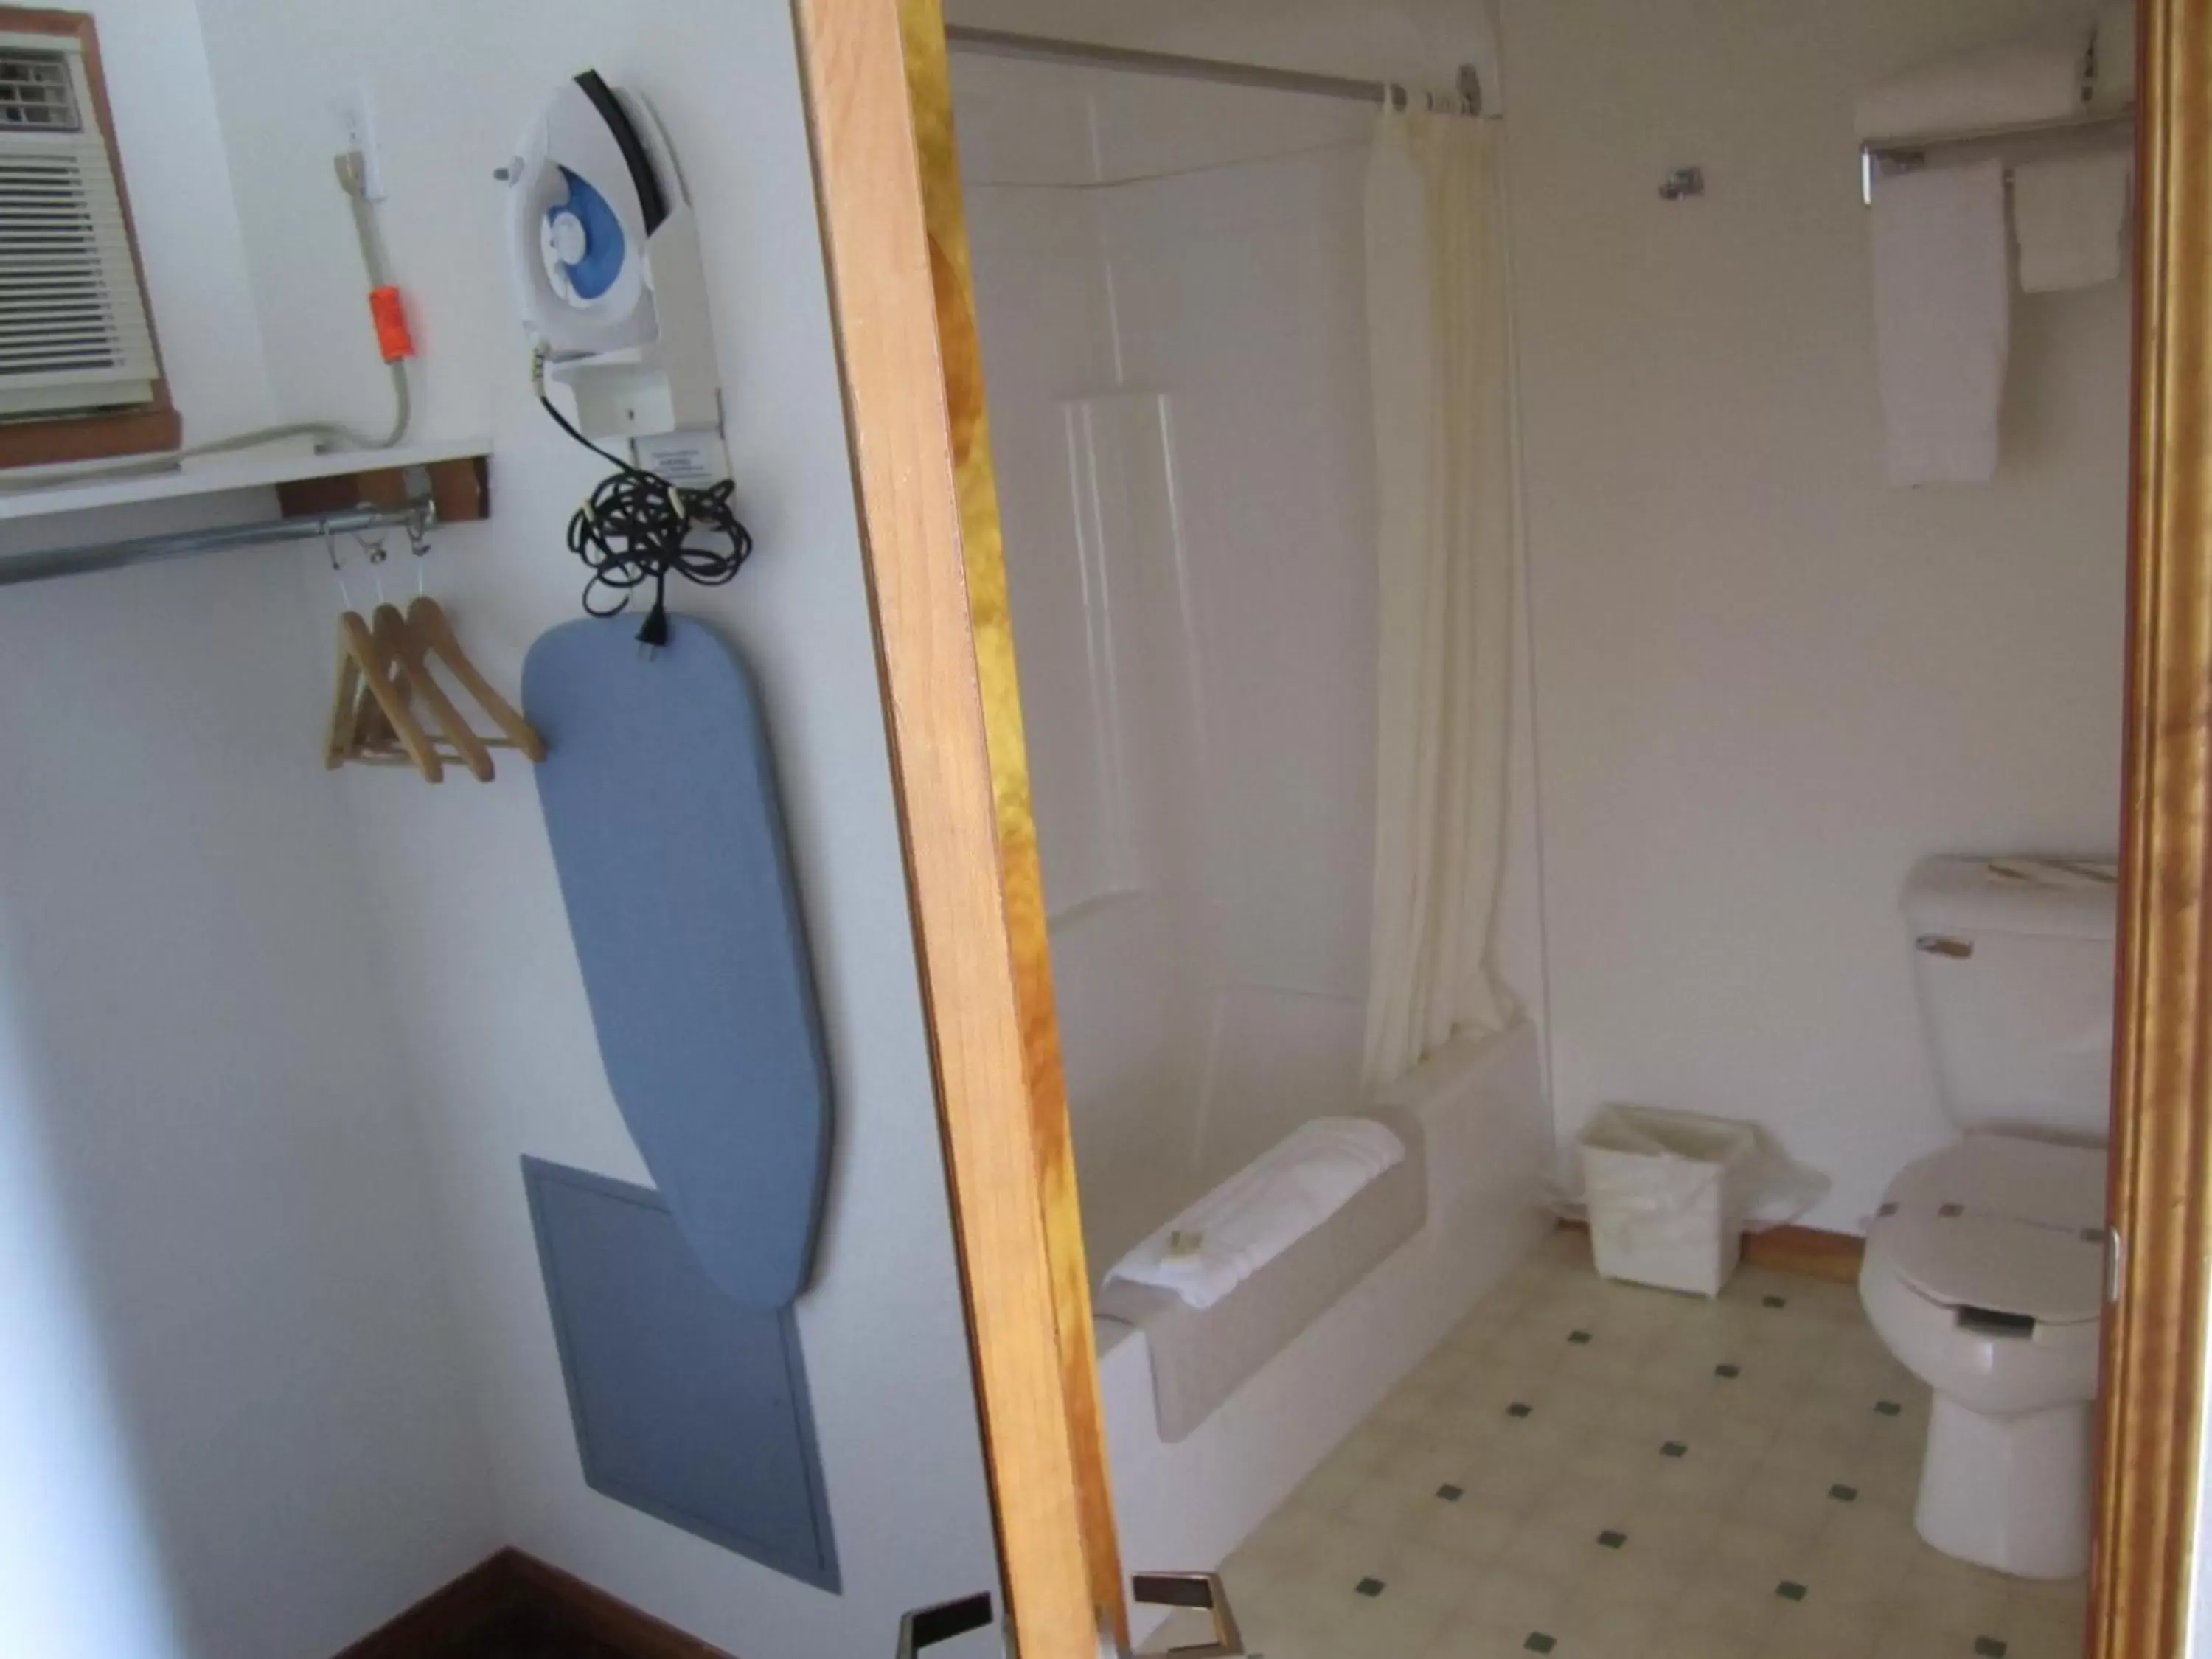 Bathroom in Bishops Country Inn Motel